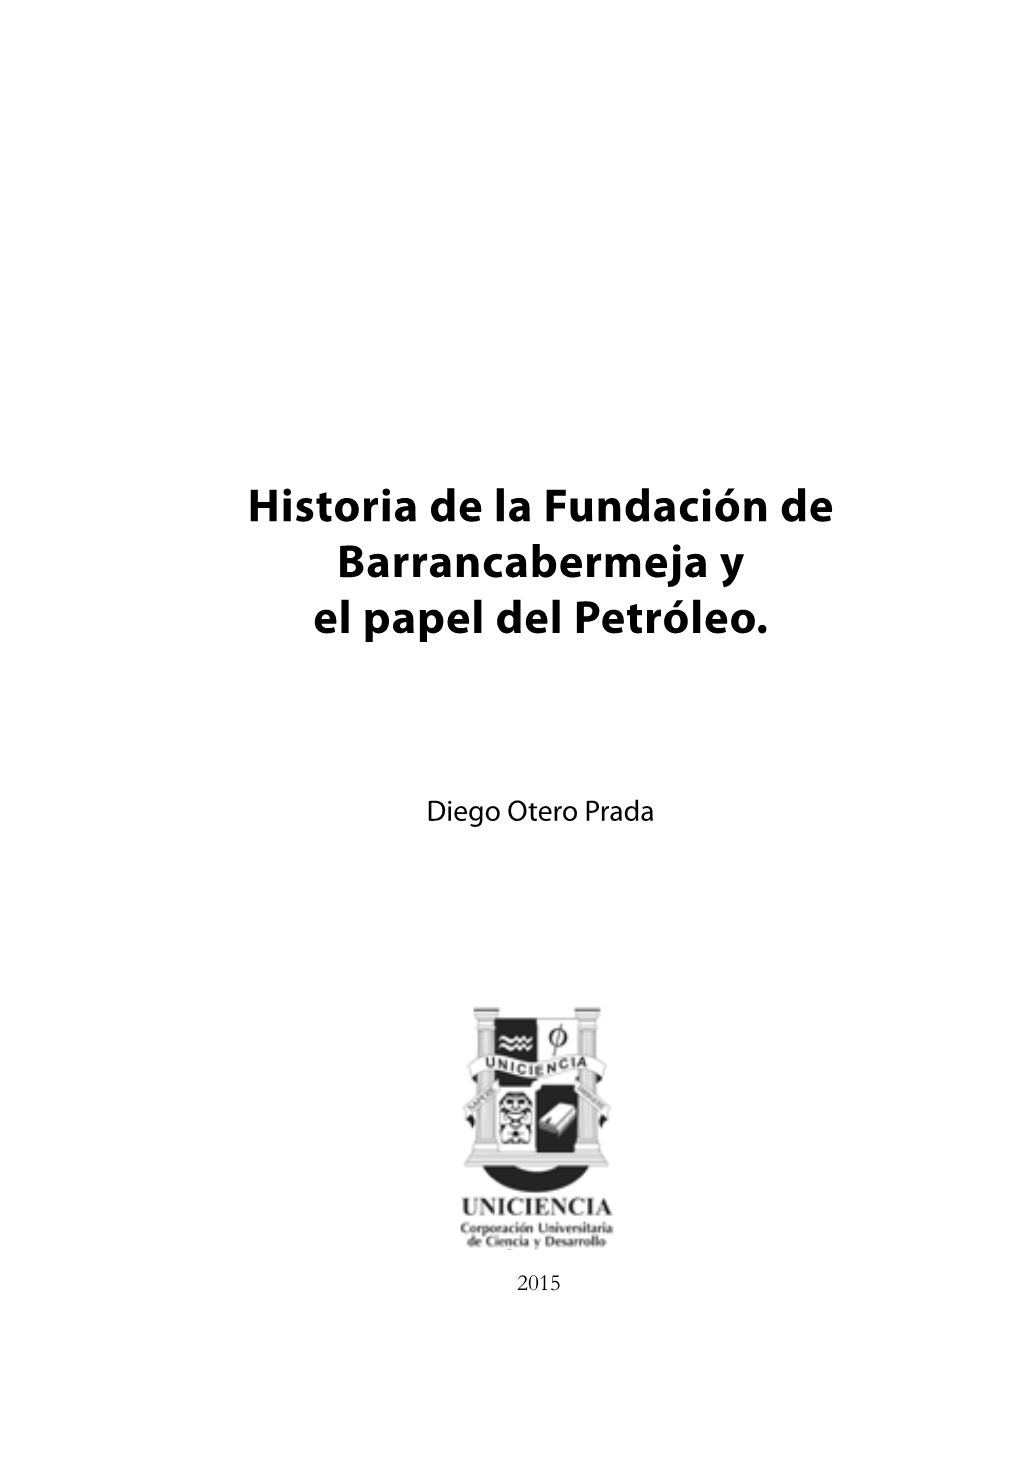 Historia De La Fundación De Barrancabermeja Y El Papel Del Petróleo